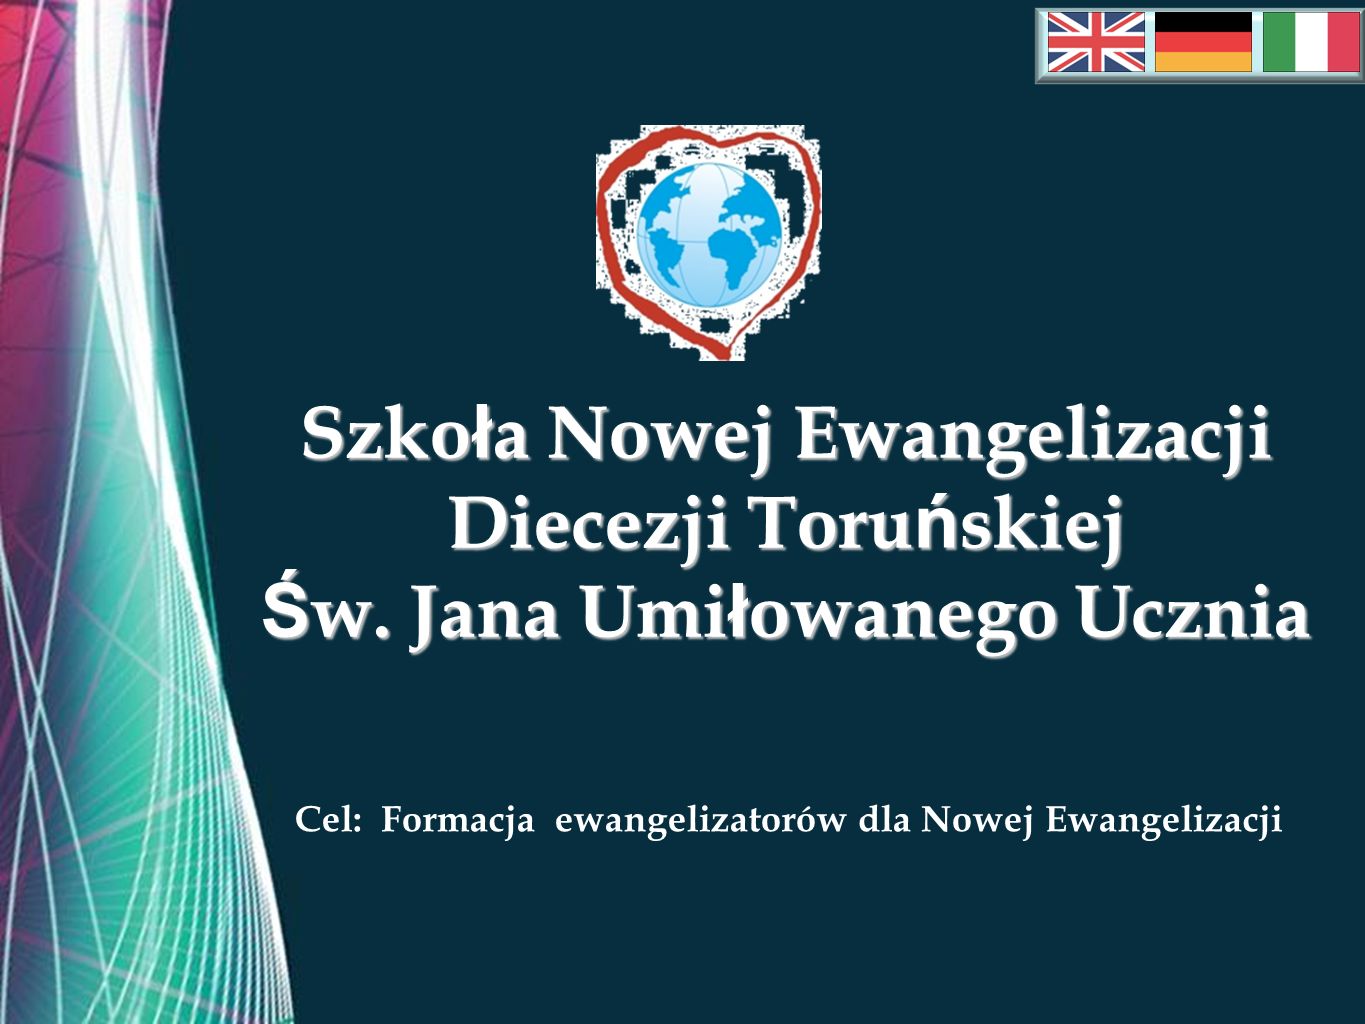 Free Powerpoint Templates Szko ł a Nowej Ewangelizacji Diecezji Toru ń skiej Ś w.